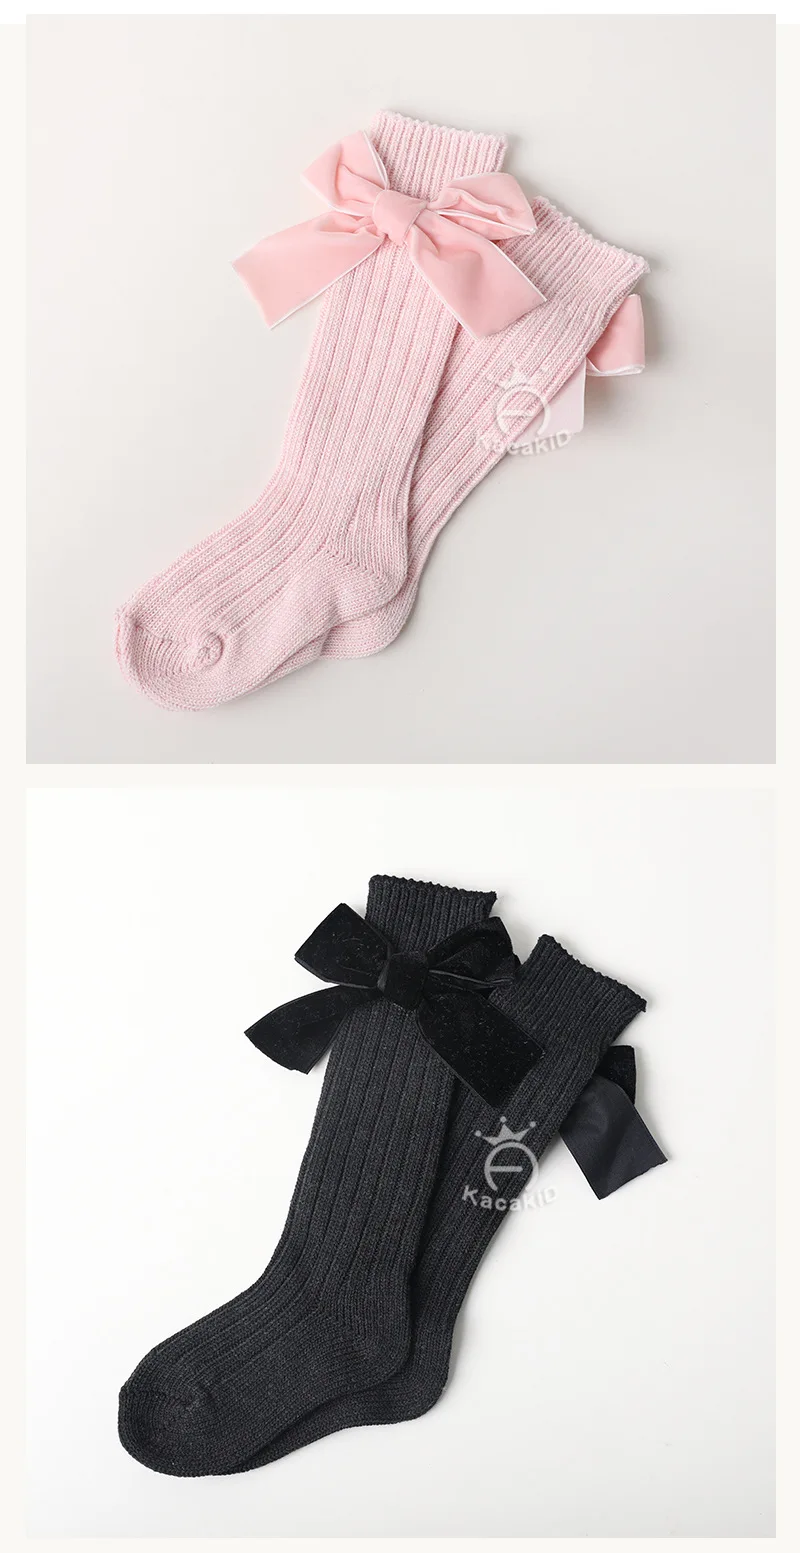 Kacakid/зимние вязаные носки для маленьких девочек милые кружевные гольфы для девочек детские длинные носки теплые хлопковые бархатные чулки принцессы с бантом